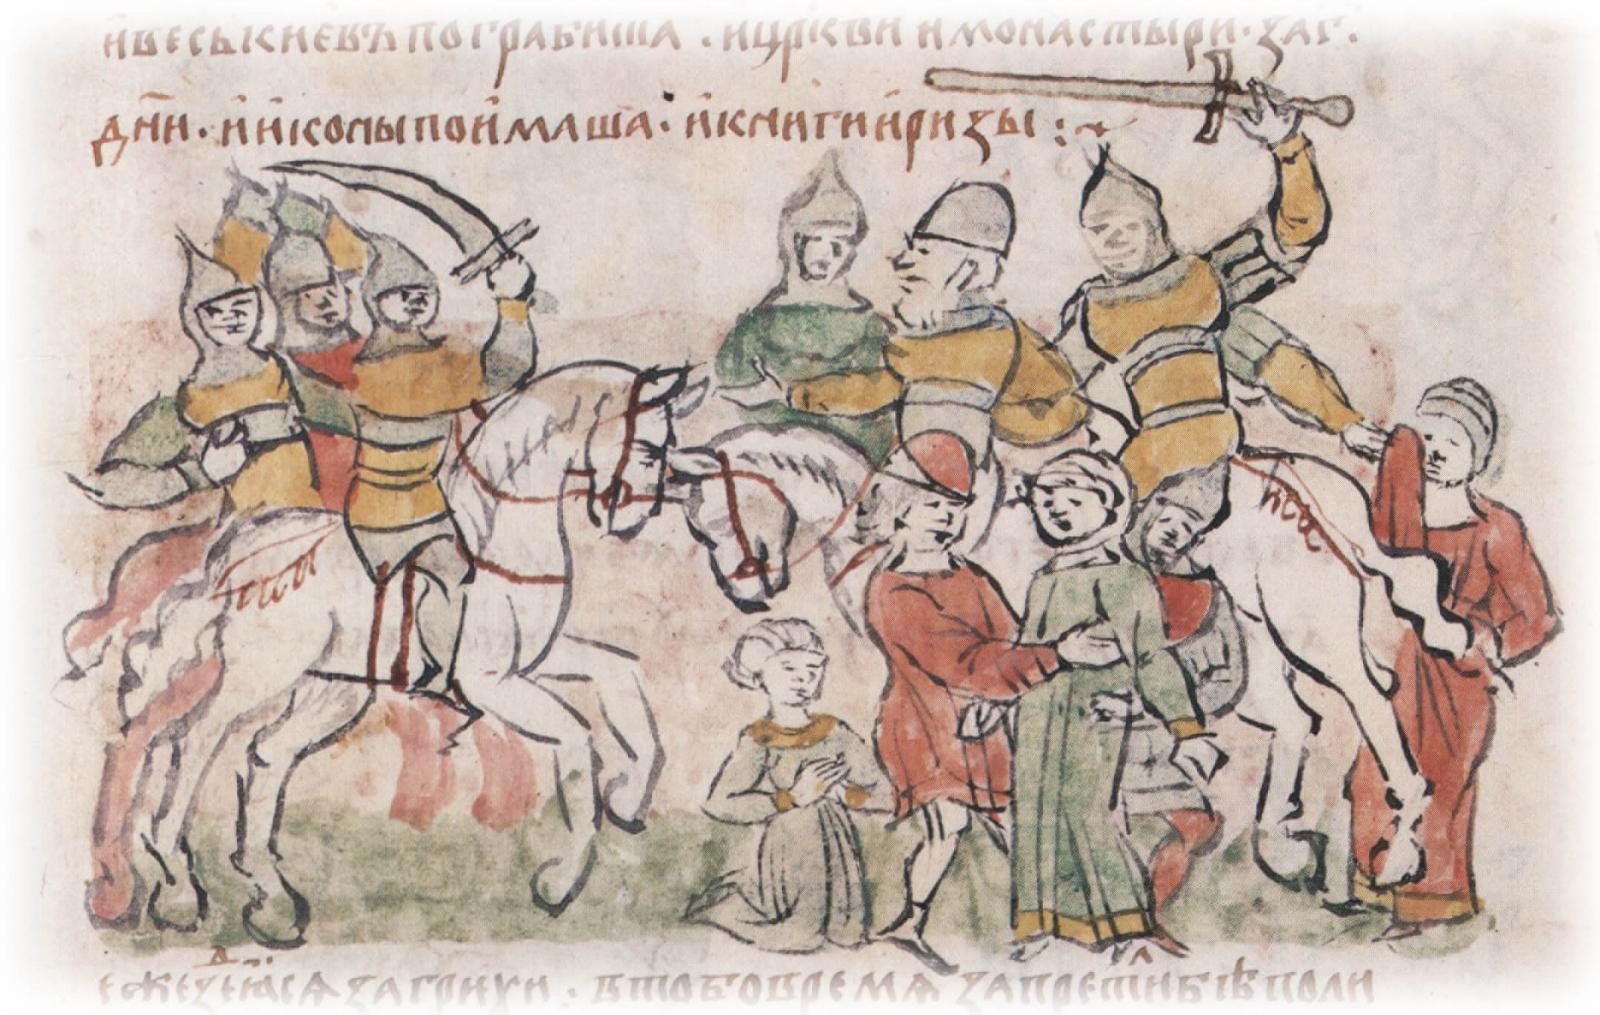 Поход владимирского войска под предводительством Мстислава Андреевича на Киев.